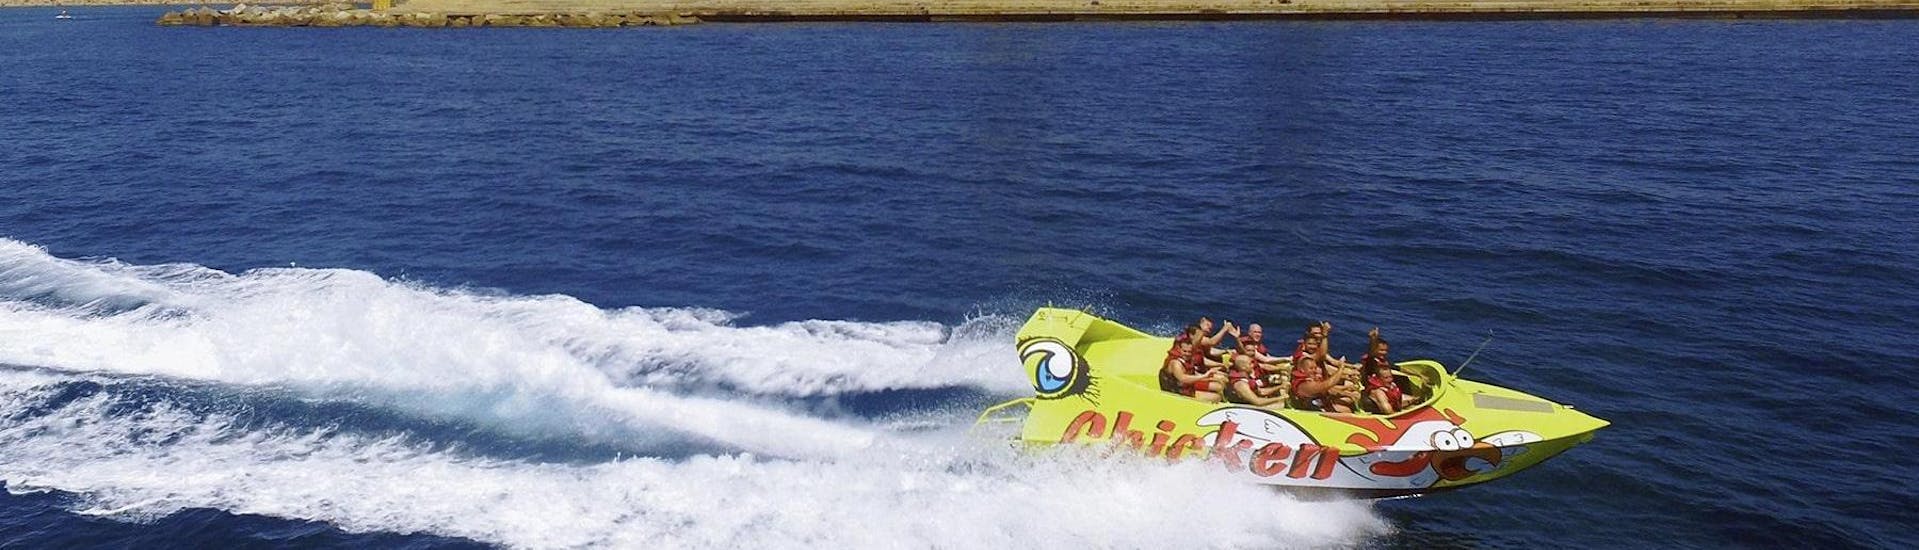 Des amis profitent de leur sortie Speed Boat 100% Adrénaline - Barcelone avec leur conducteur expérimenté de Five Star Barcelona.